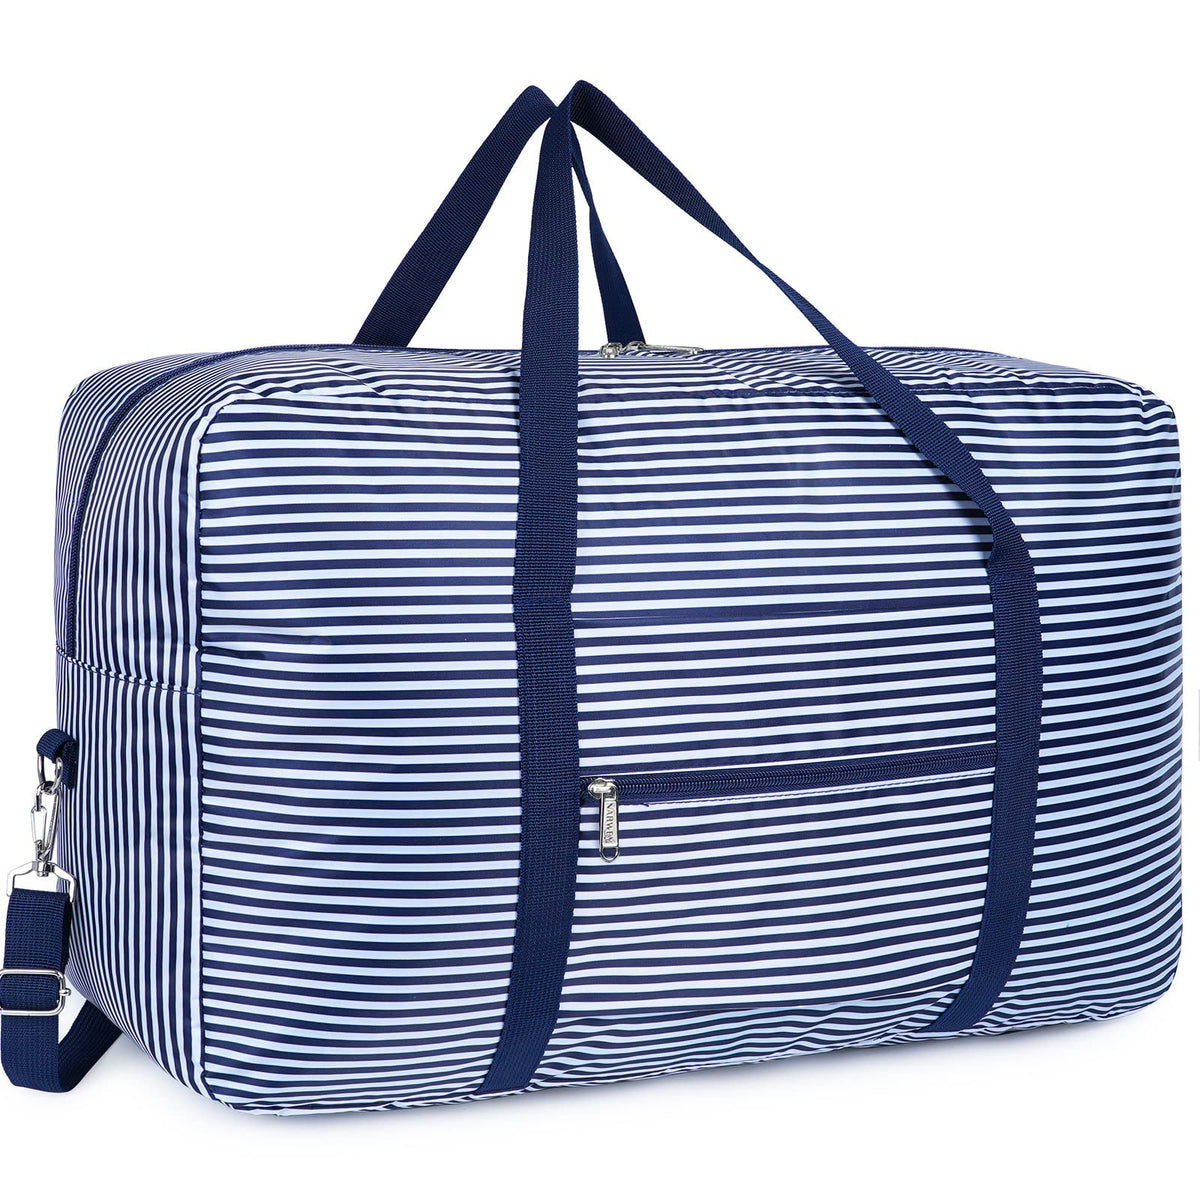 T3122 Travel Duffel Bag Foldable narwey